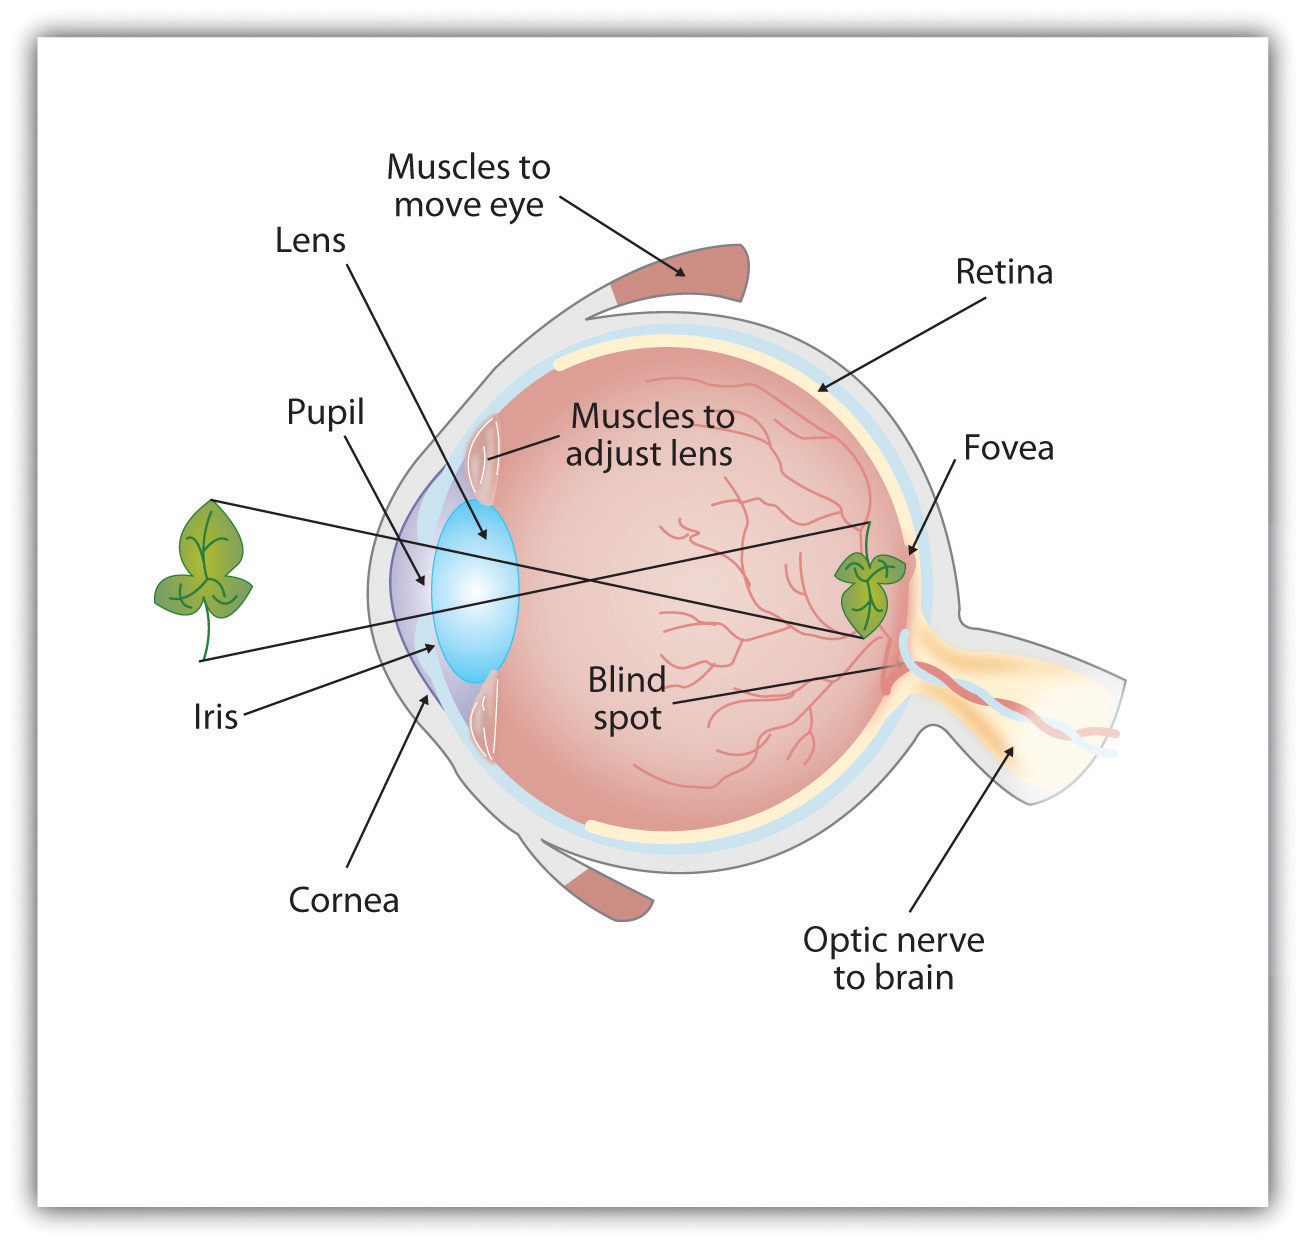 Anatomy of the human eye